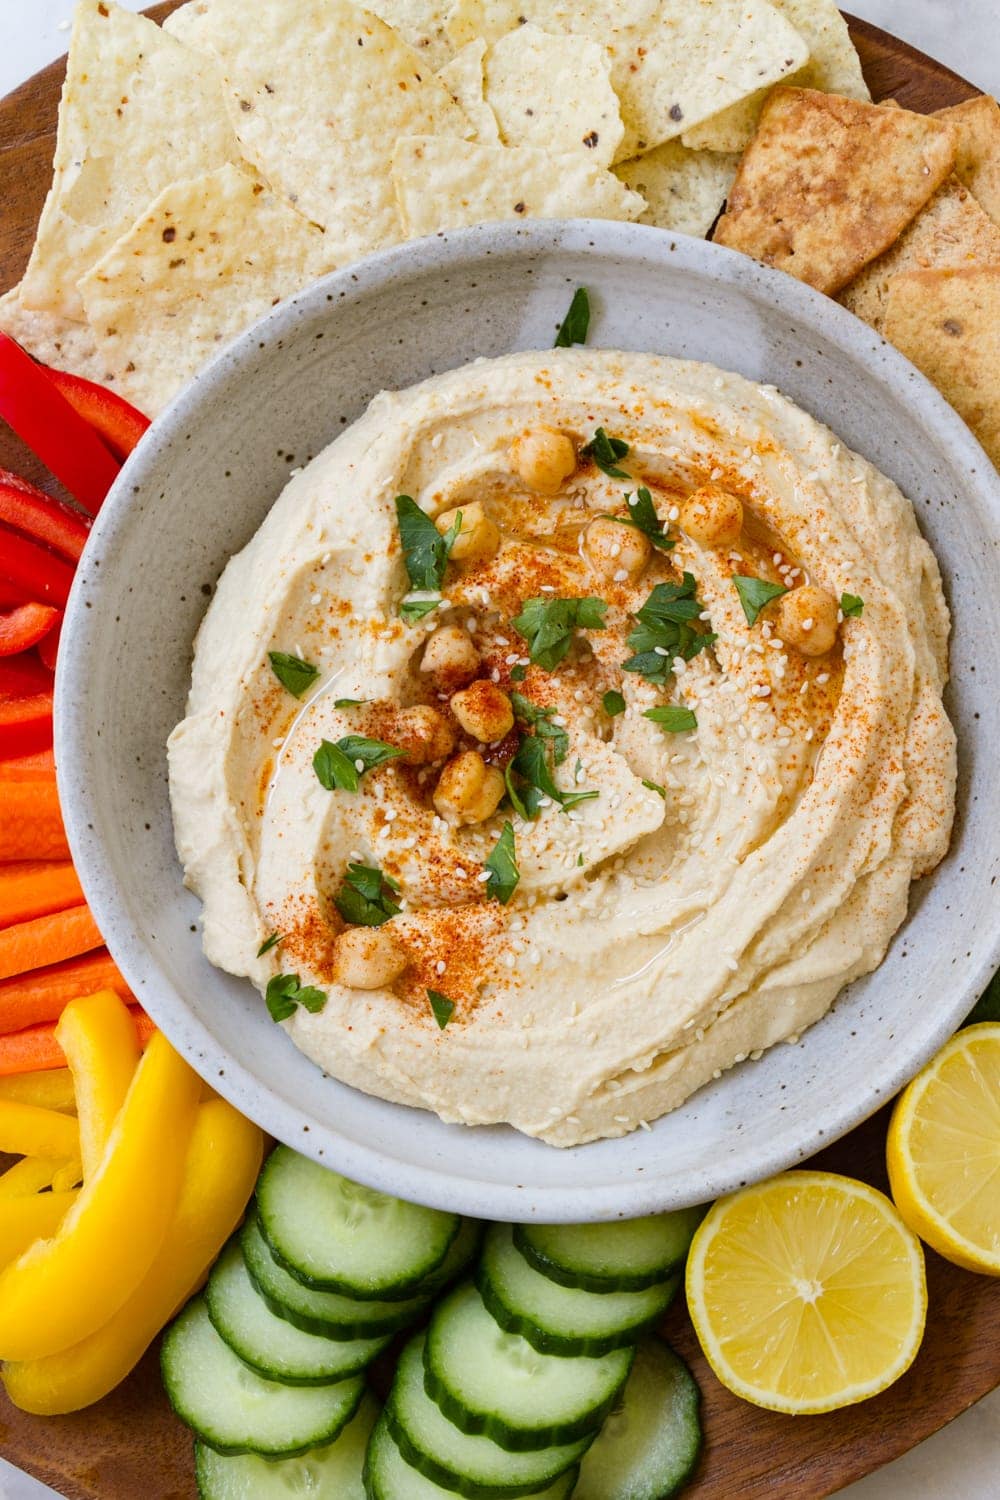 Favorite Hummus Recipe (5 Minutes) - The Simple Veganista